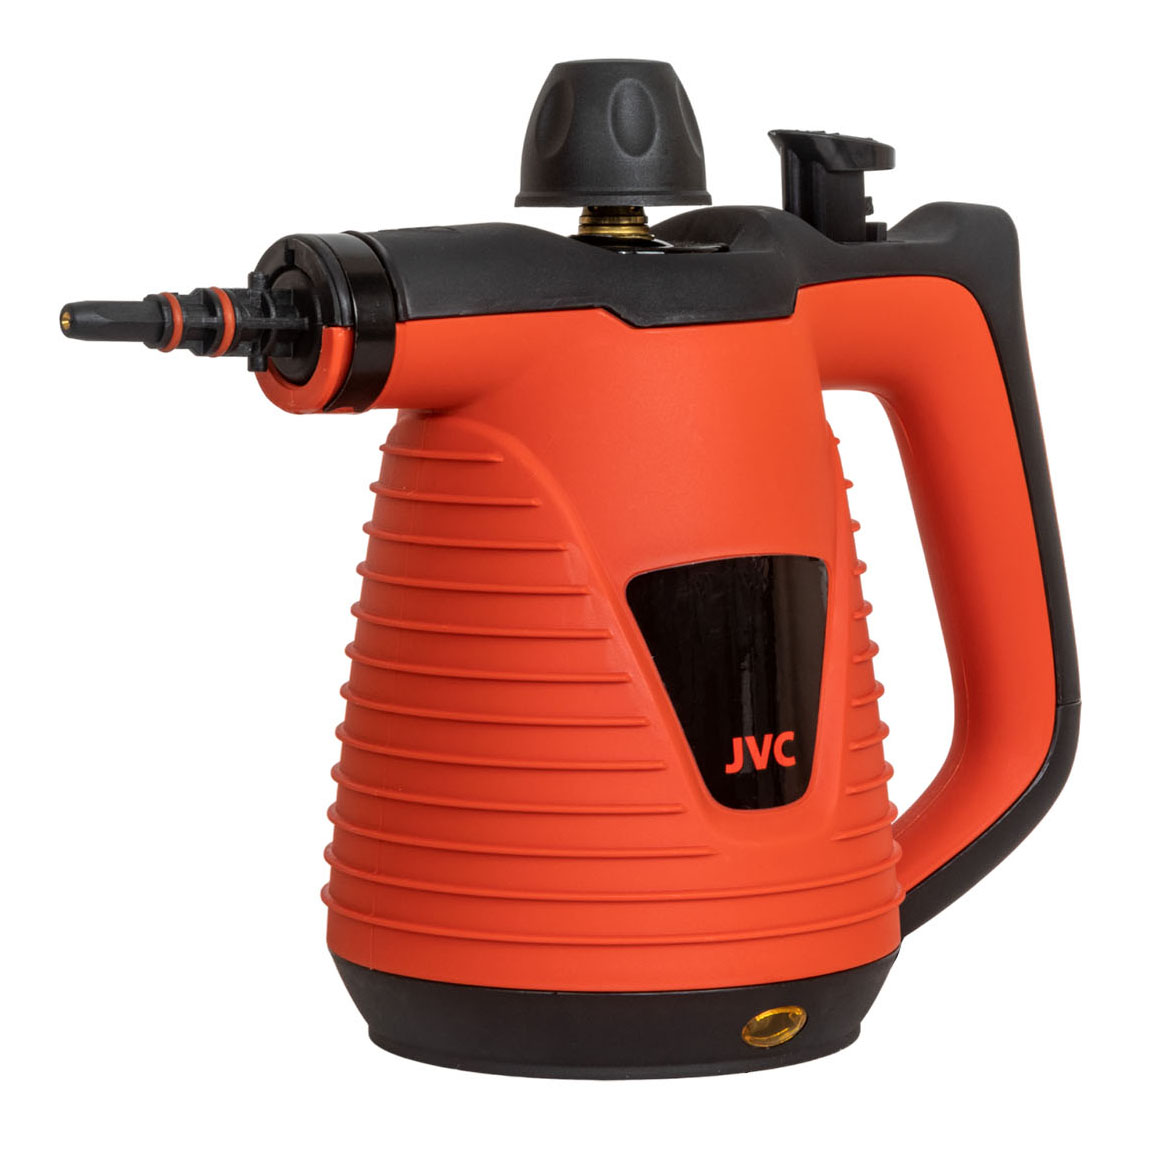 Пароочиститель JVC JH-SC4100 оранжевый, черный пароочиститель mie forever оранжевый